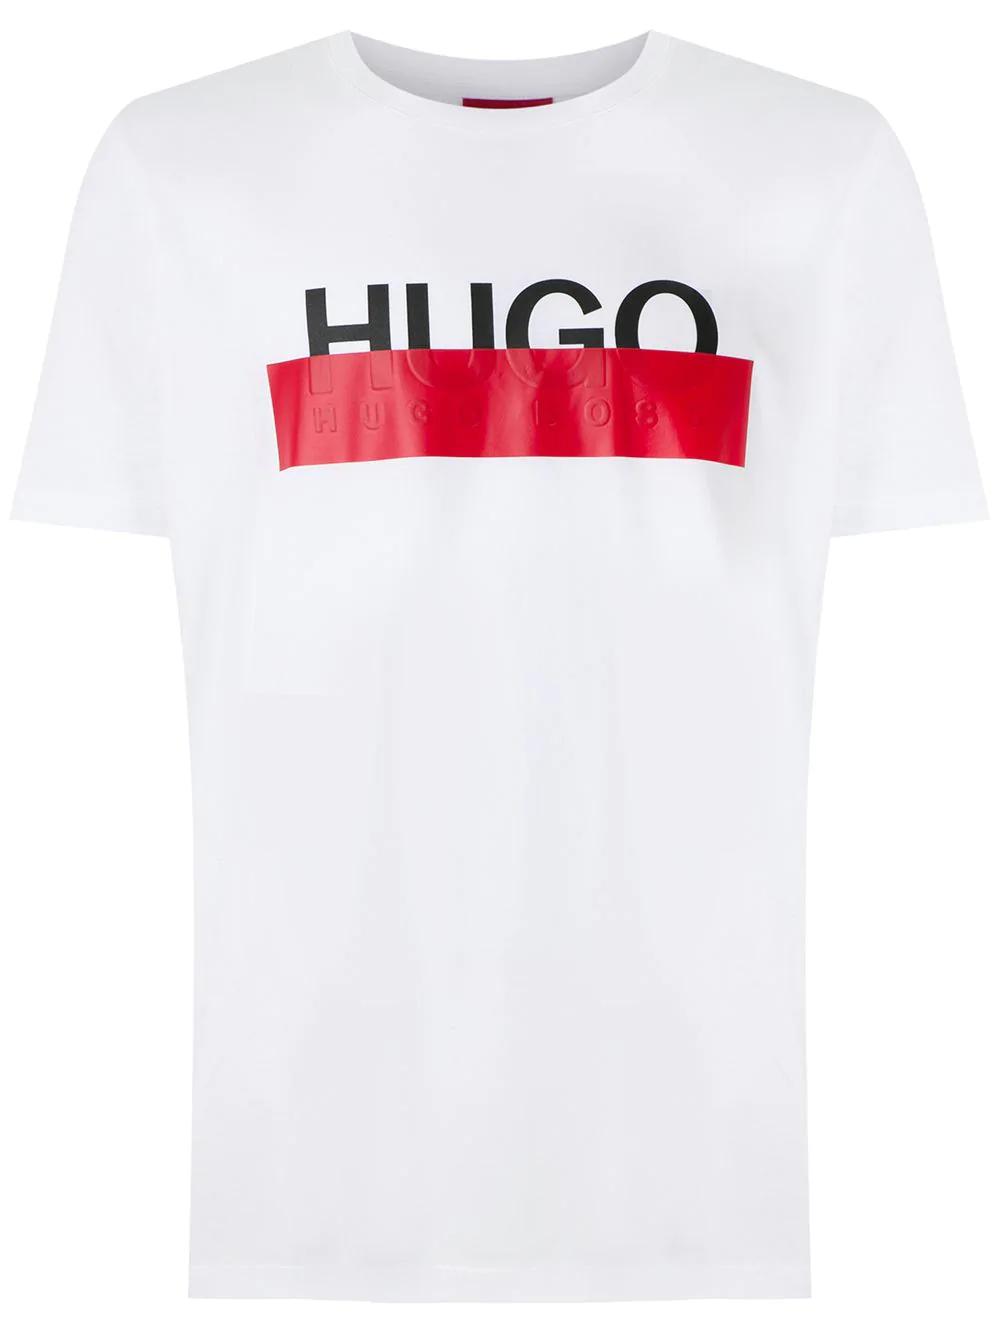 hugo boss olive t shirt